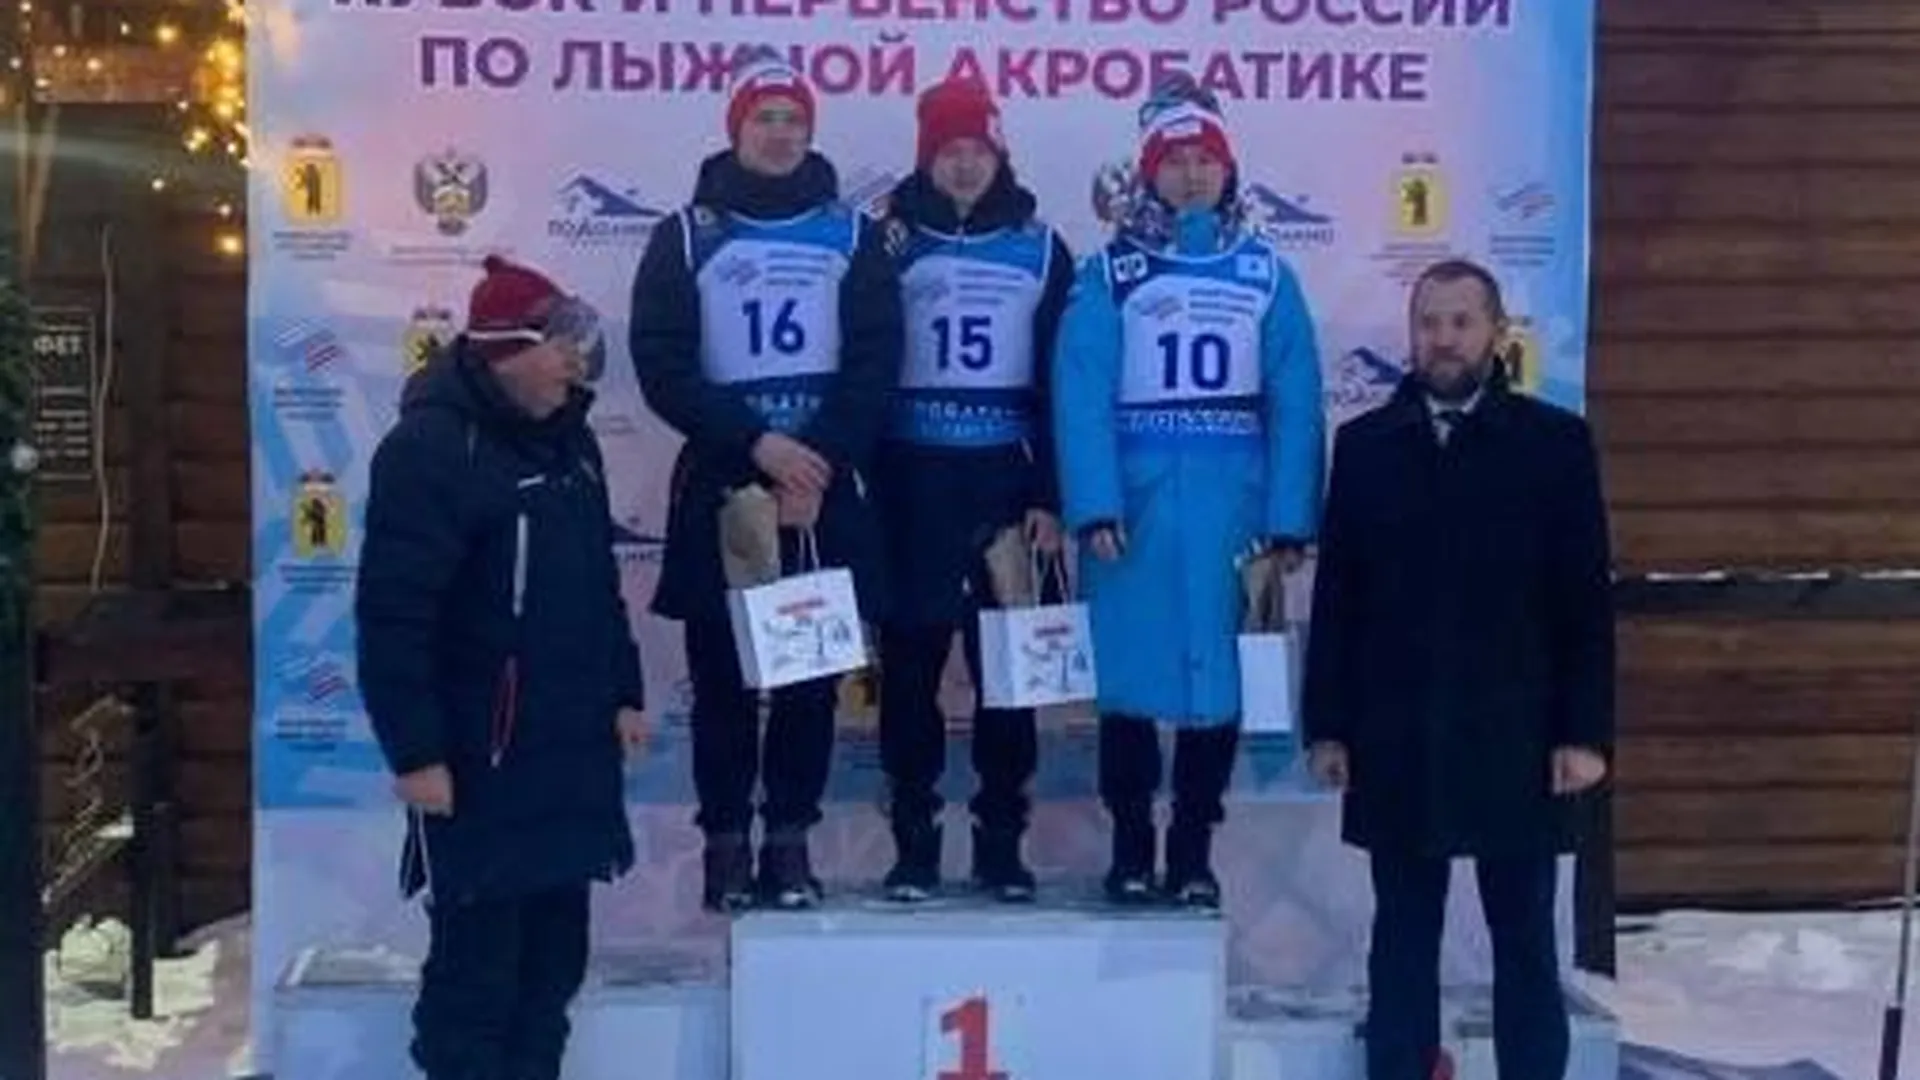 Подмосковные спортсмены братья Буровы завоевали 3 медали на этапах Кубка РФ по фристайлу